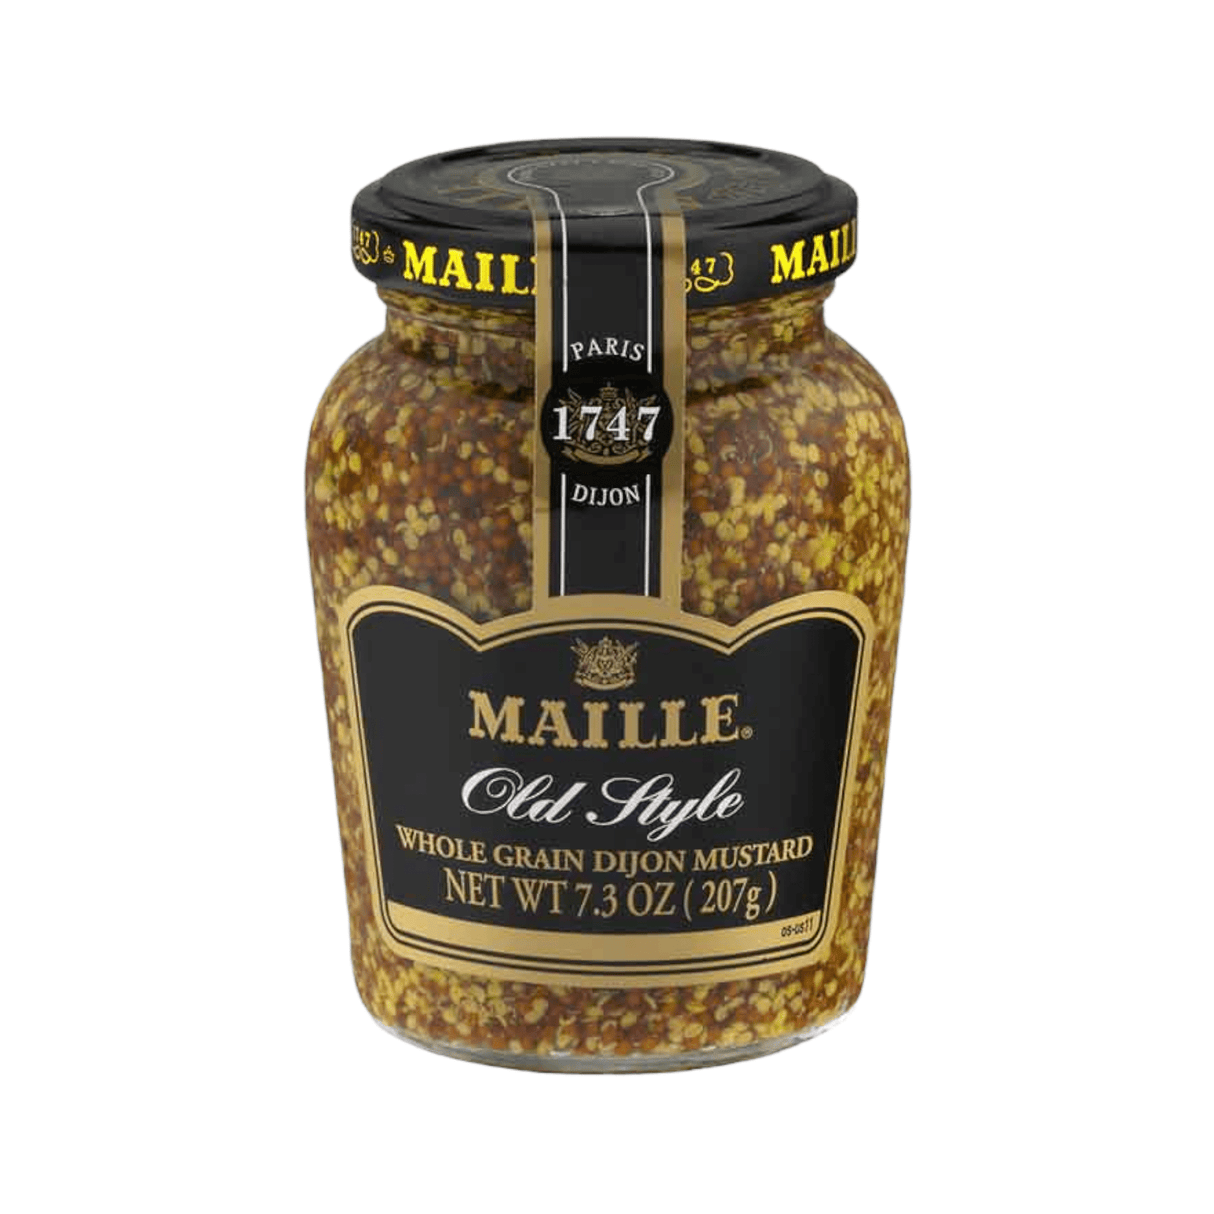 Maille Old Style Dijon Mustard